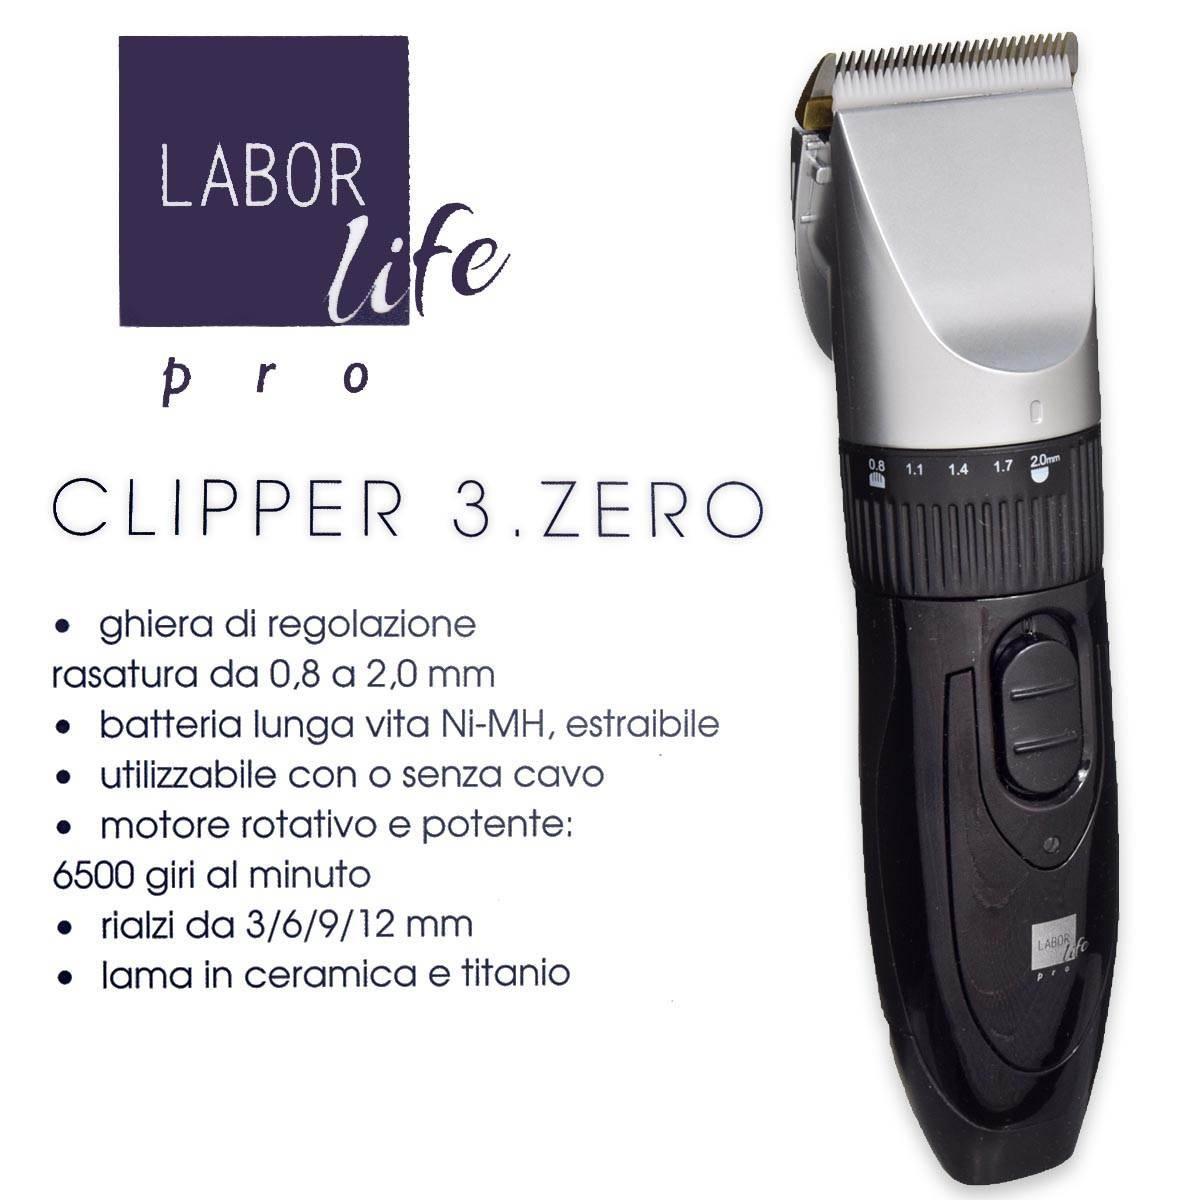 Labor Tagliacapelli con lama regolabile labor life clipper 3.zero